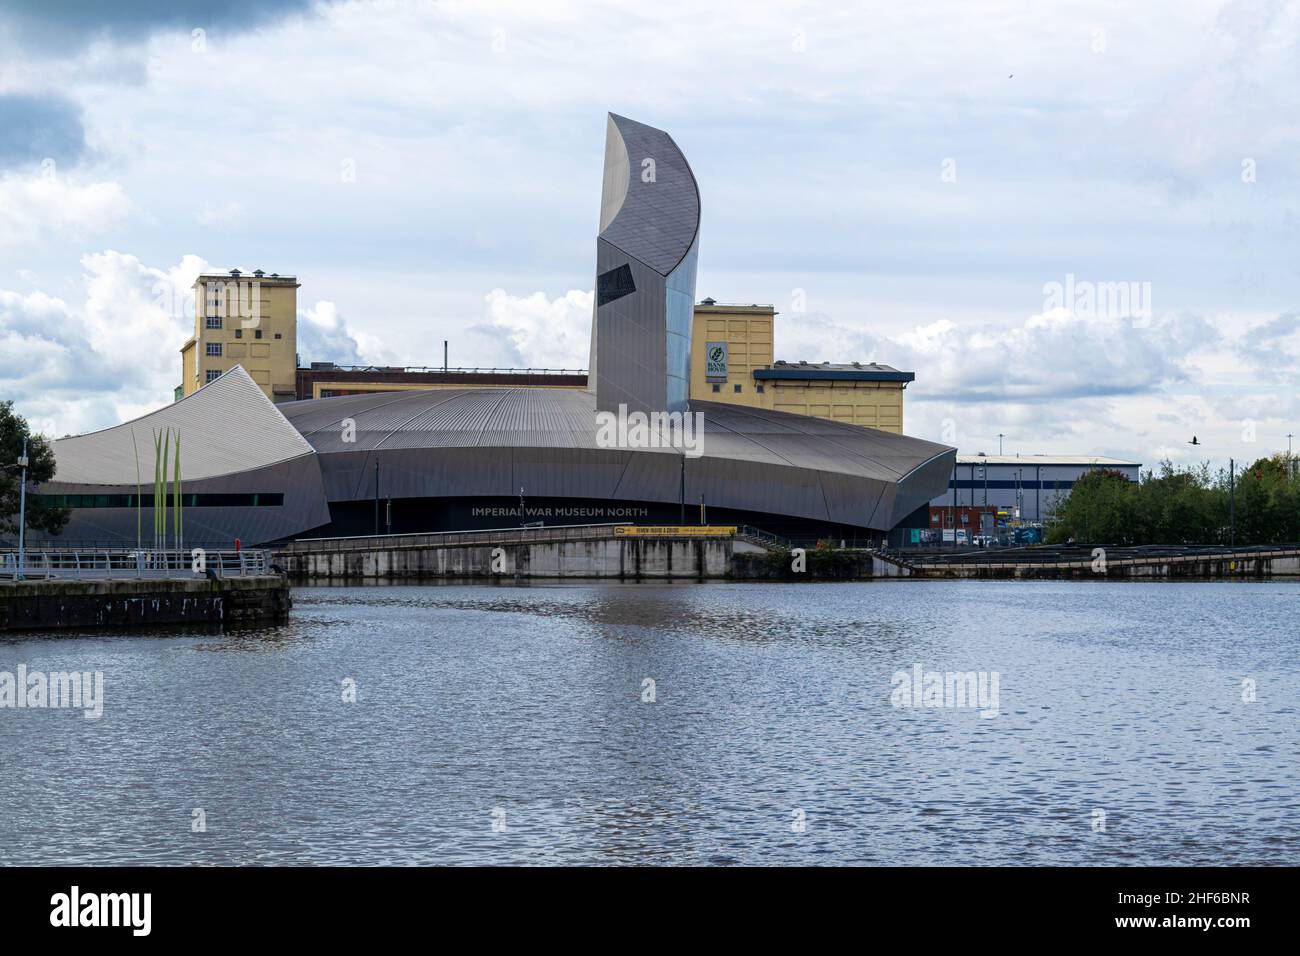 Salford, Großbritannien - 23rd. September 2019: Imperial war Museum North in Salford Quays, entworfen vom Architekten Daniel Libeskind. In der Nähe von MediaCityUK Stockfoto